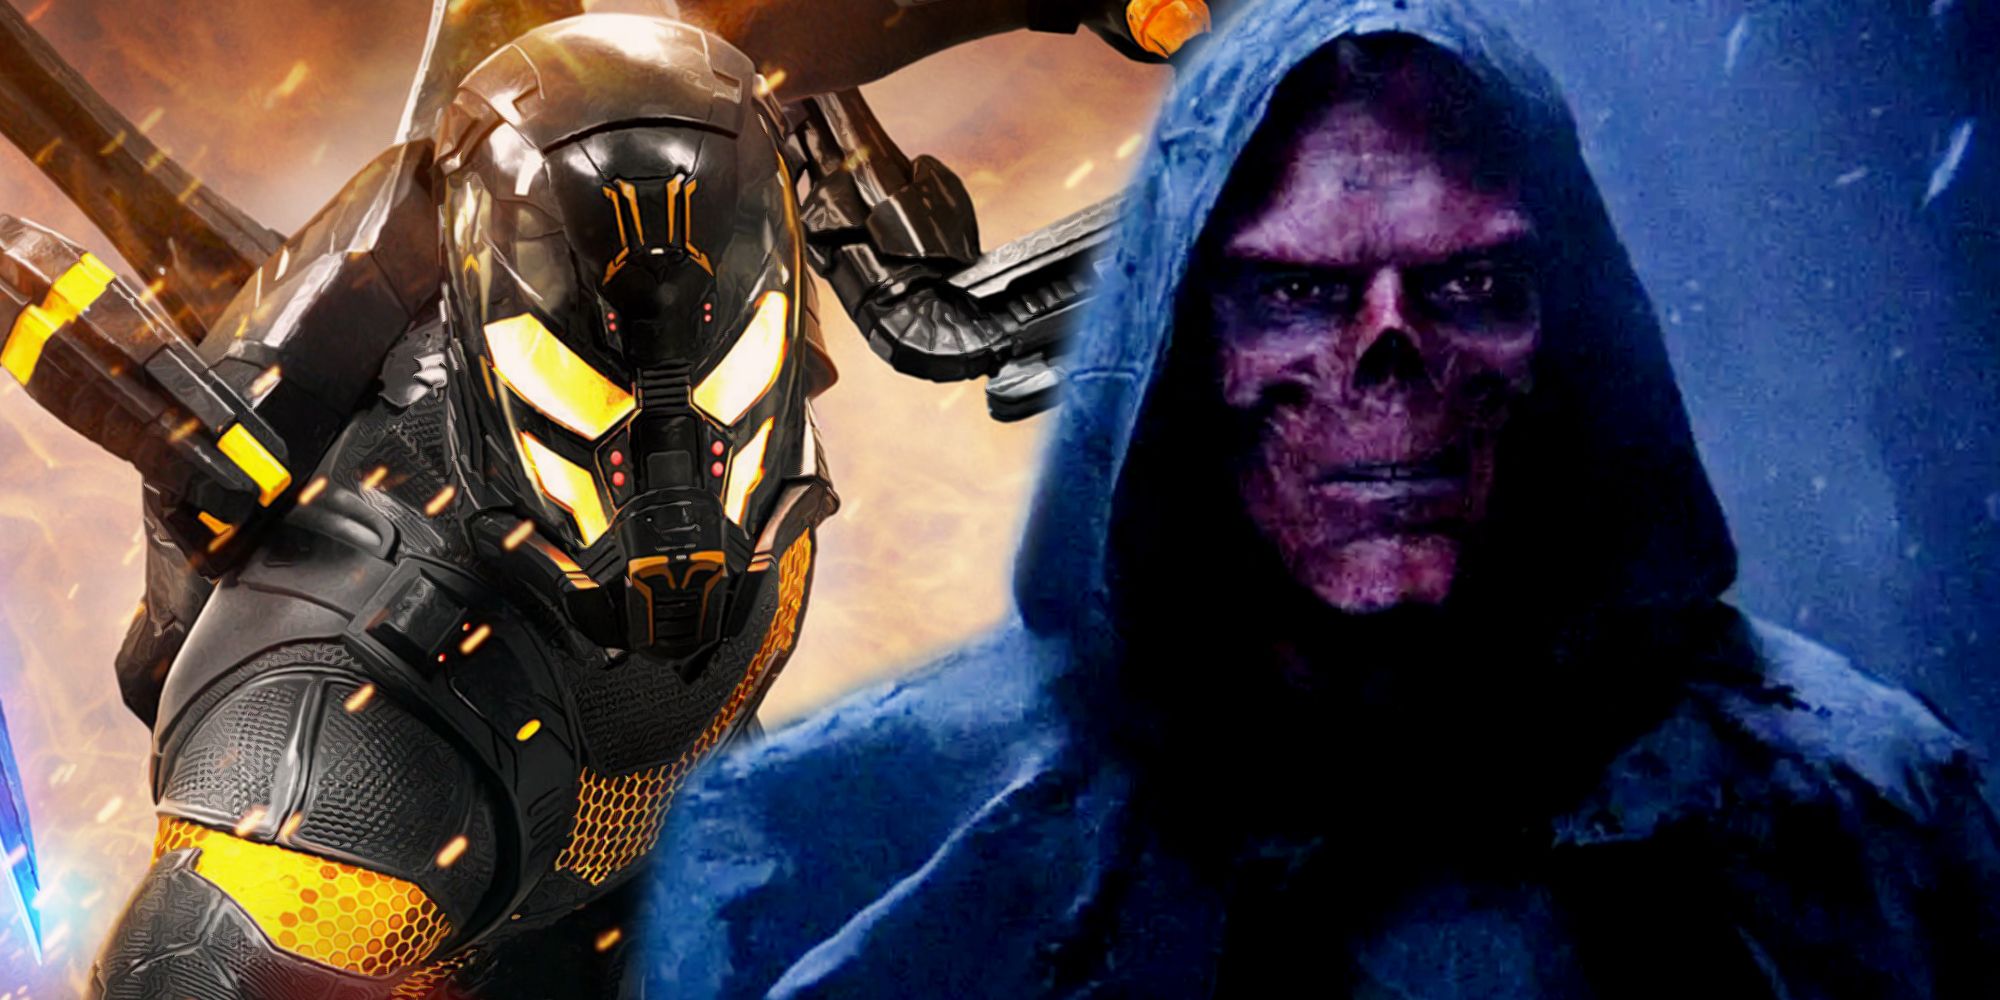 Red Skull v Avengers Infinity War Endgame a Yellowjacket v Ant Man.jpg